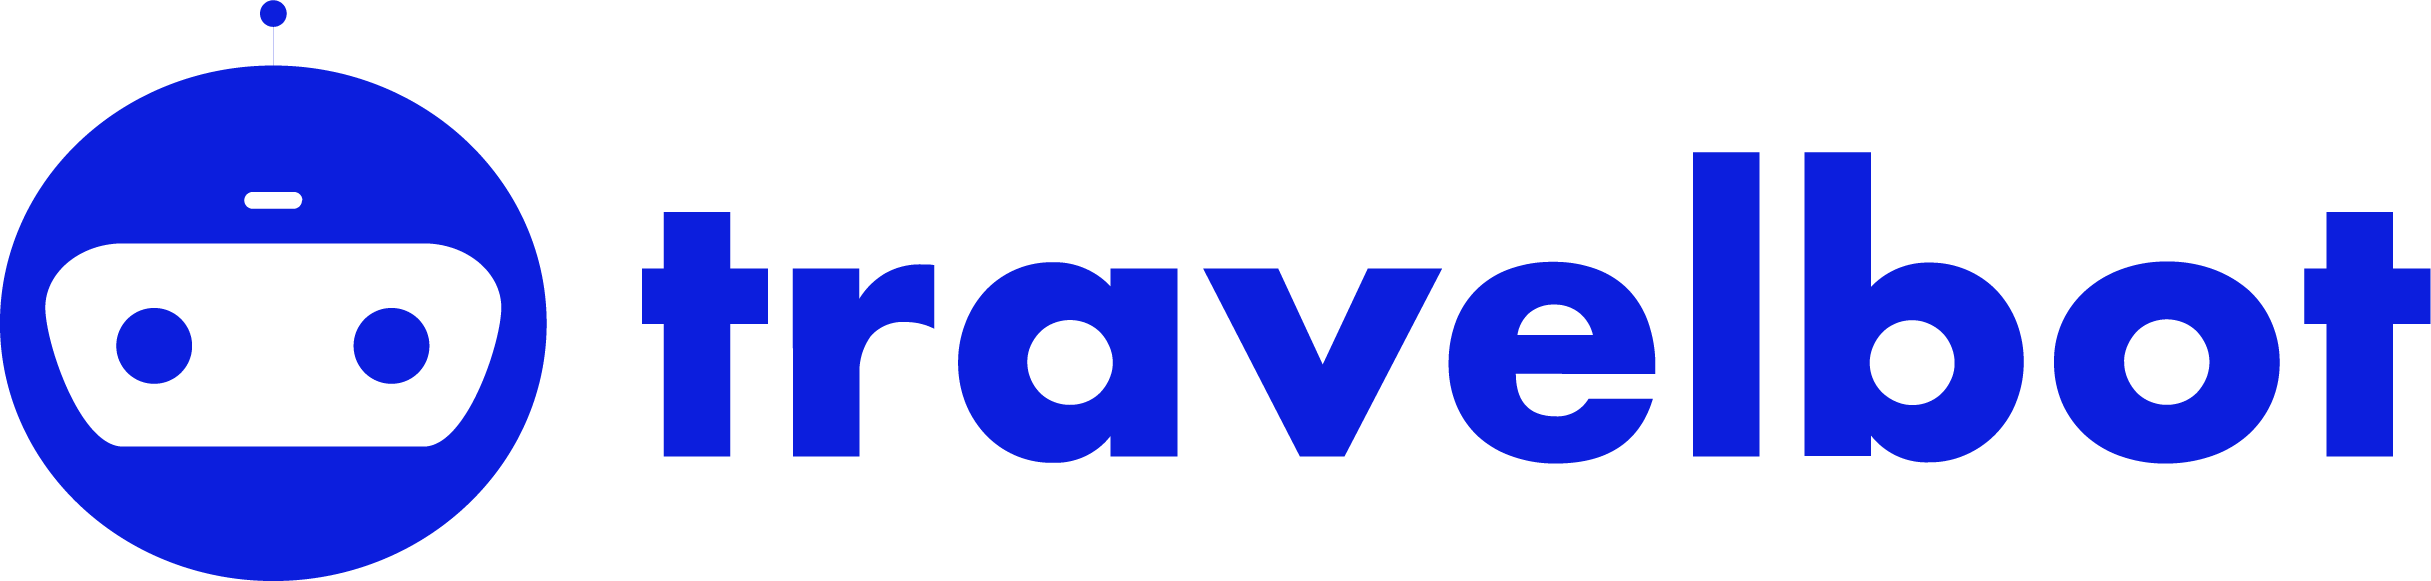 Travelbot | E-Commerce logo